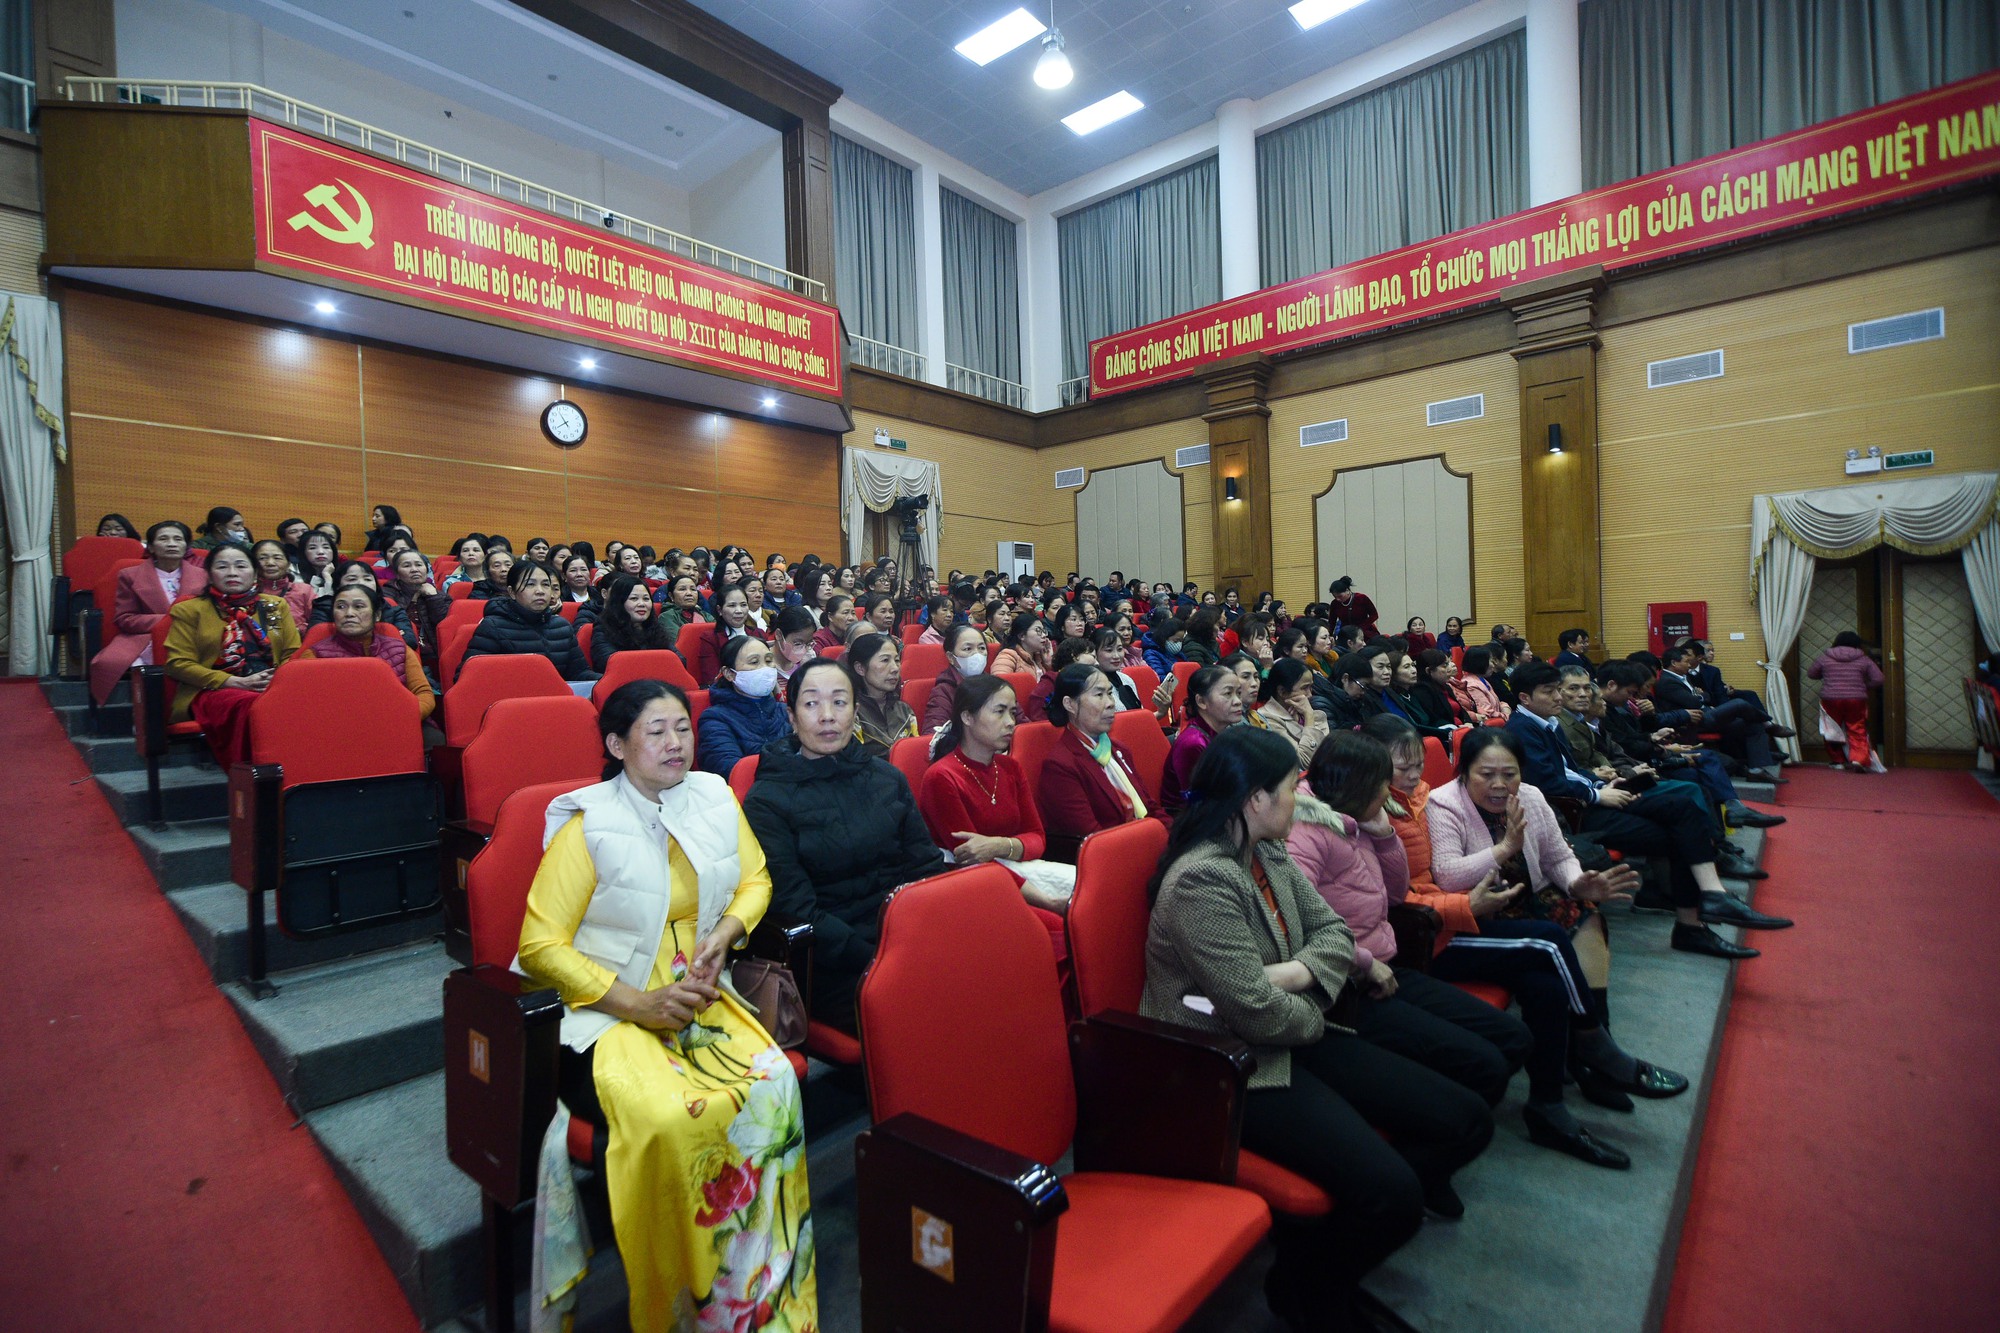 Hội Nông dân Hà Nội tổ chức Lễ mít tinh chào mừng thành công Đại hội đại biểu toàn quốc Hội NDVN lần thứ VIII - Ảnh 2.